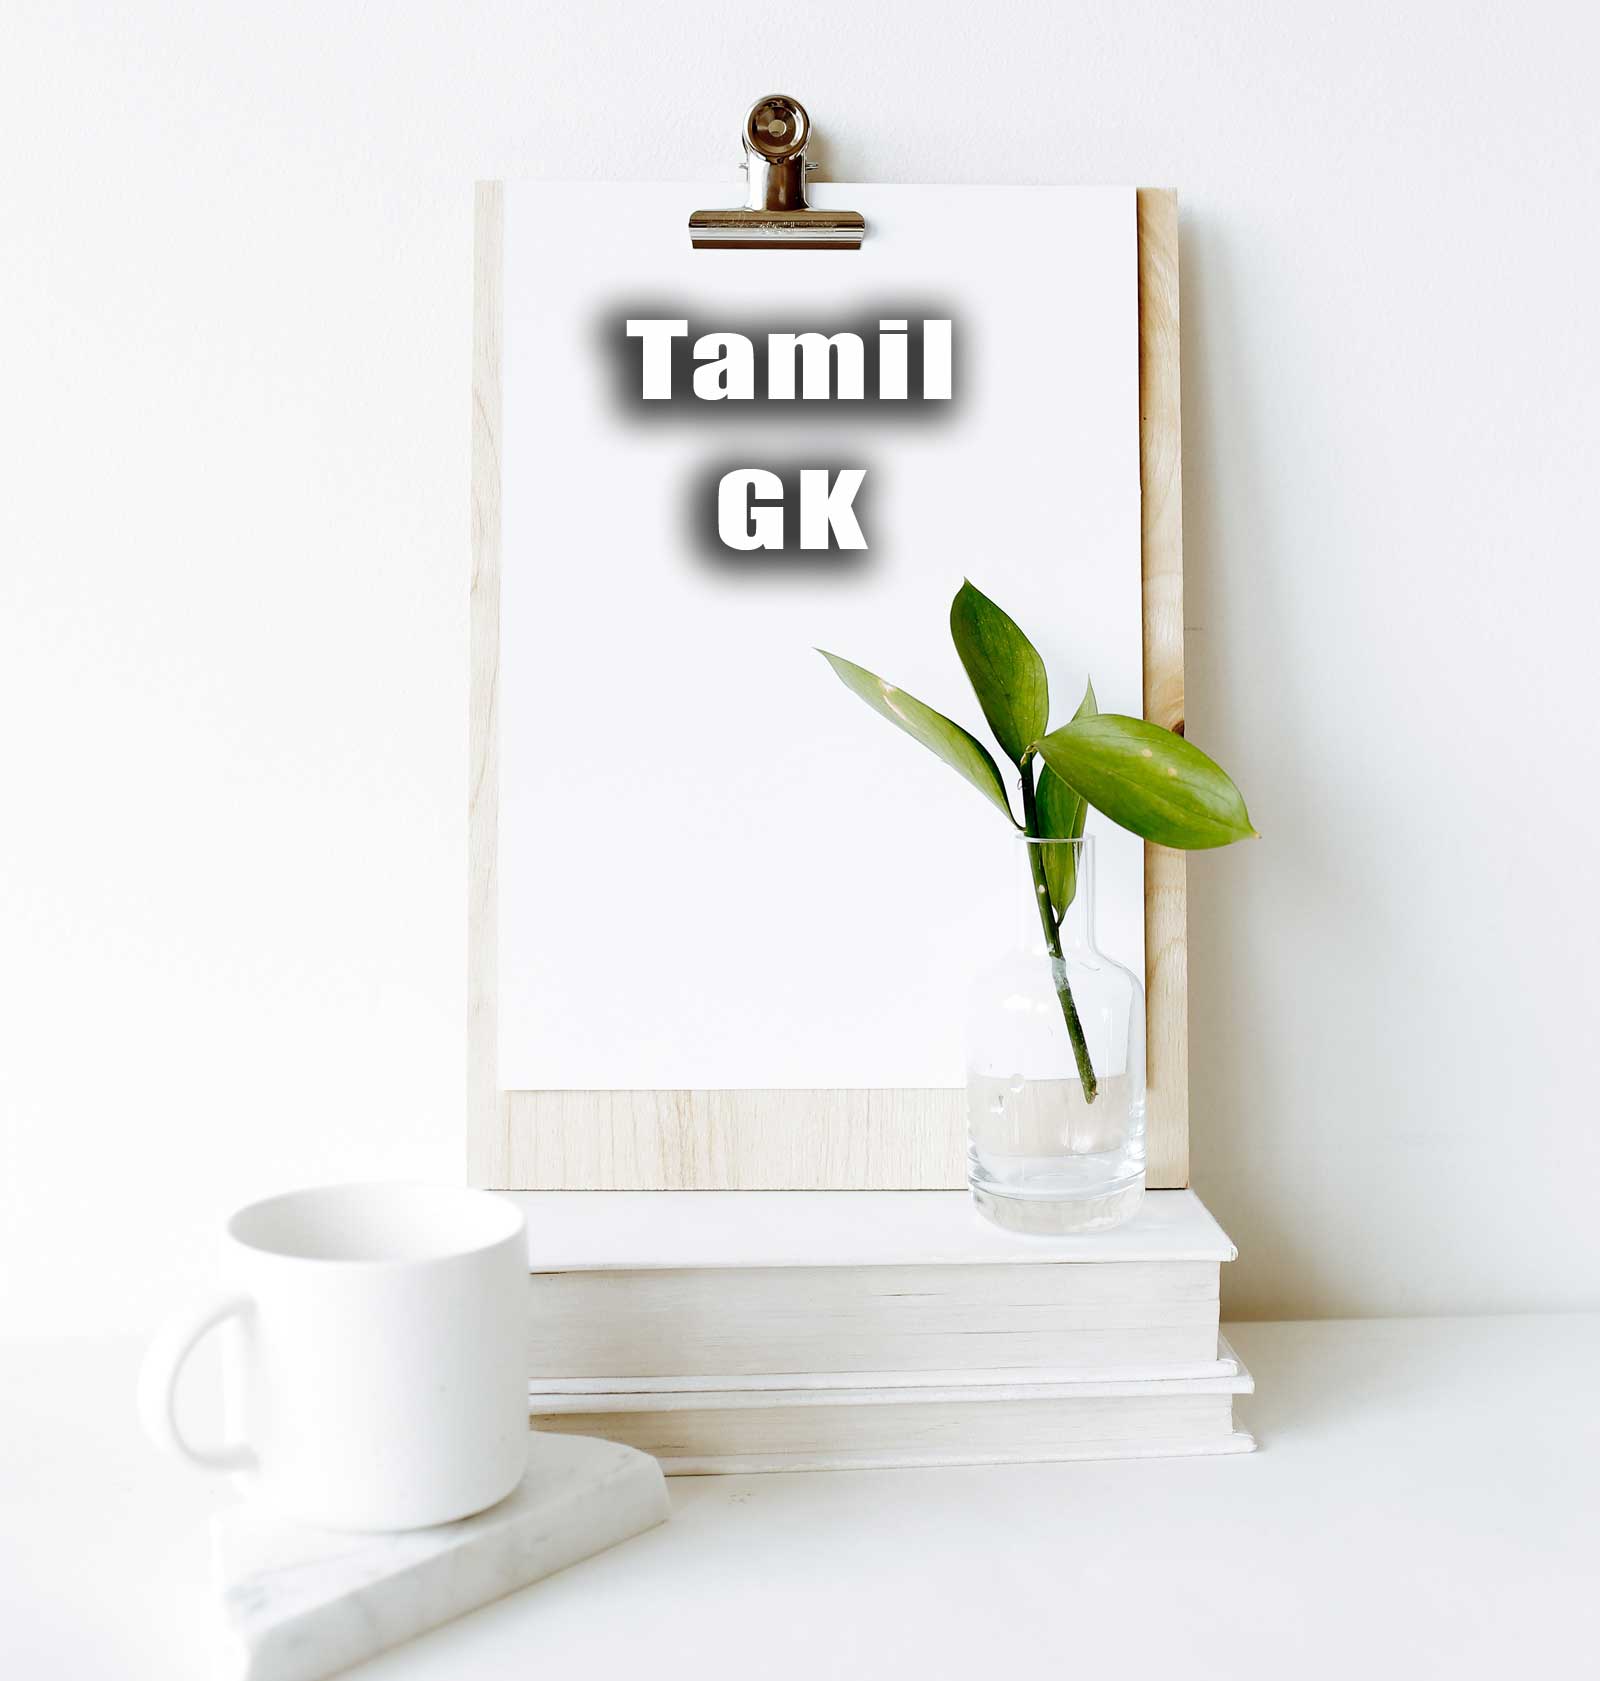 Tamil GK Mock Test